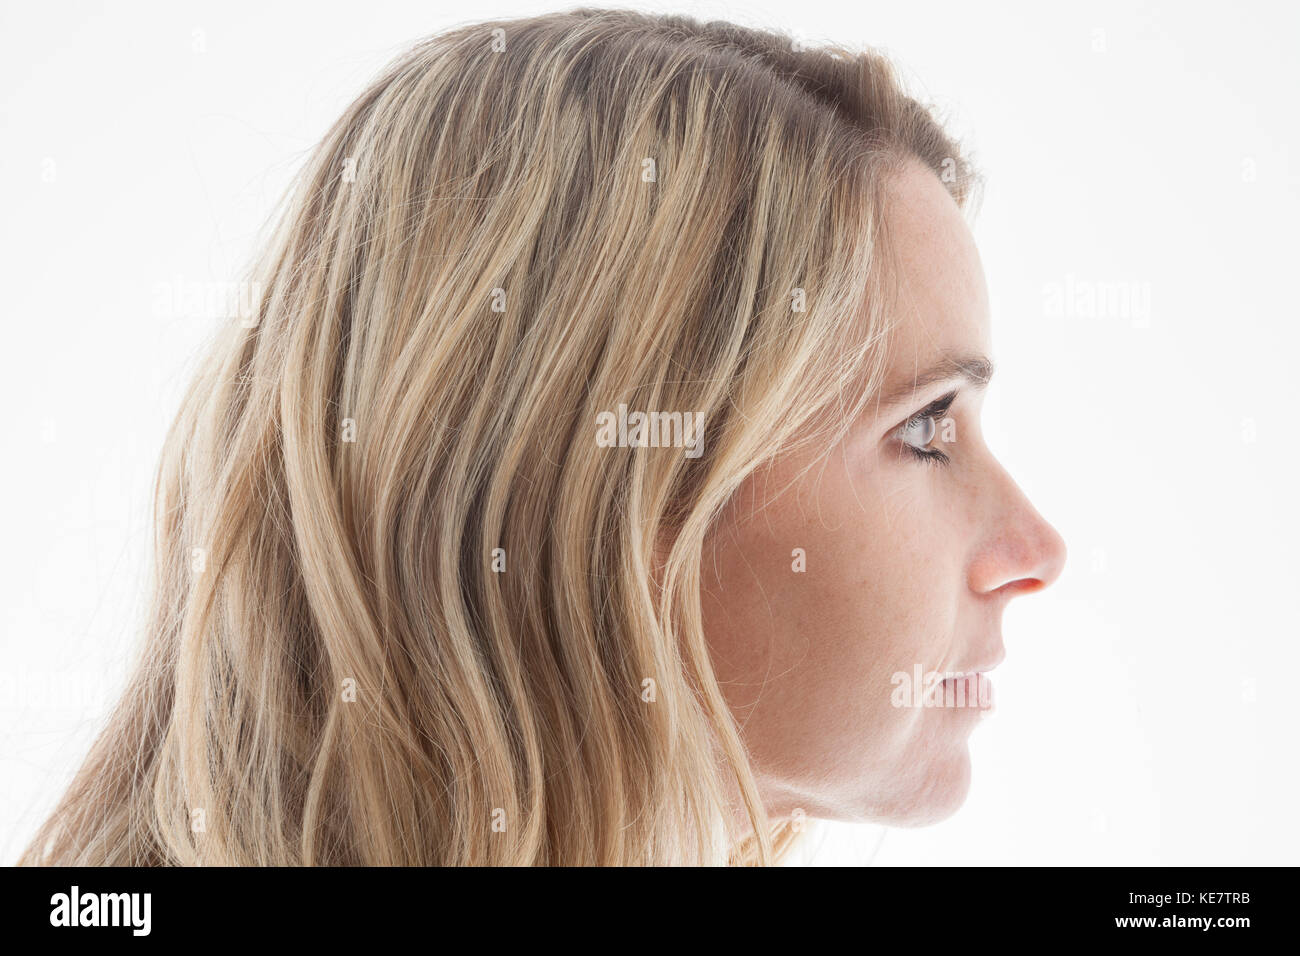 Profil d'un visage de femme aux cheveux blonds, Connecticut, États-Unis d'Amérique Banque D'Images